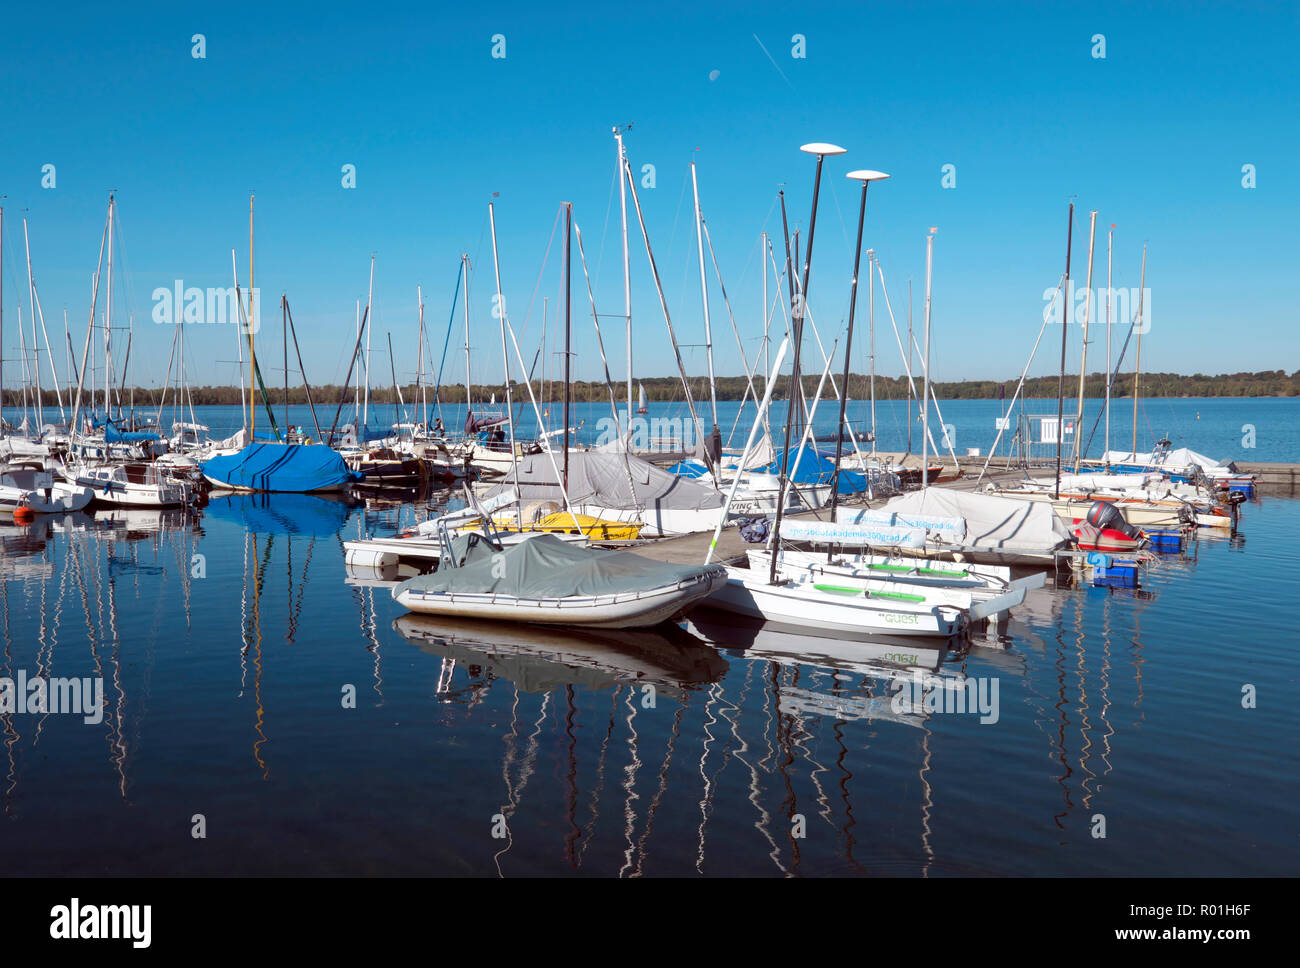 Zöbigk harbour at Lake Cospuden, Neuseenland Leipzig, Markkleeberg, Saxony, Germany Stock Photo